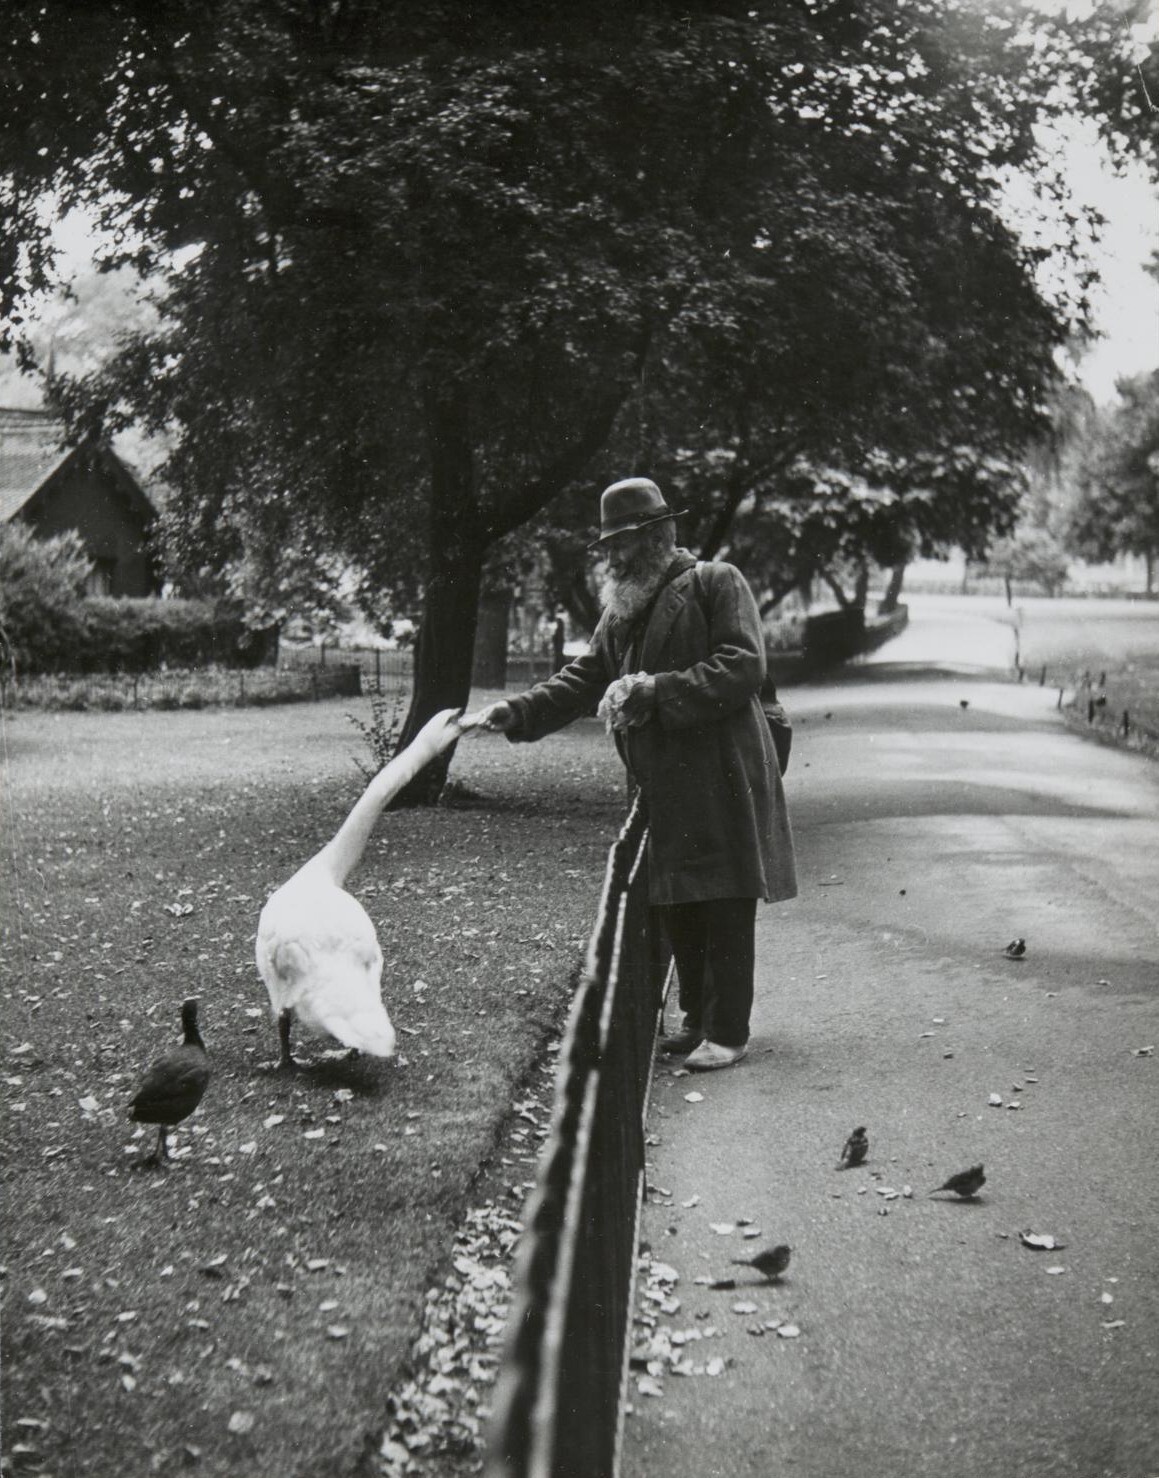 Кормление птиц. Сент-Джеймсский парк, Лондон, 1950. Фотограф Изис Бидерманас